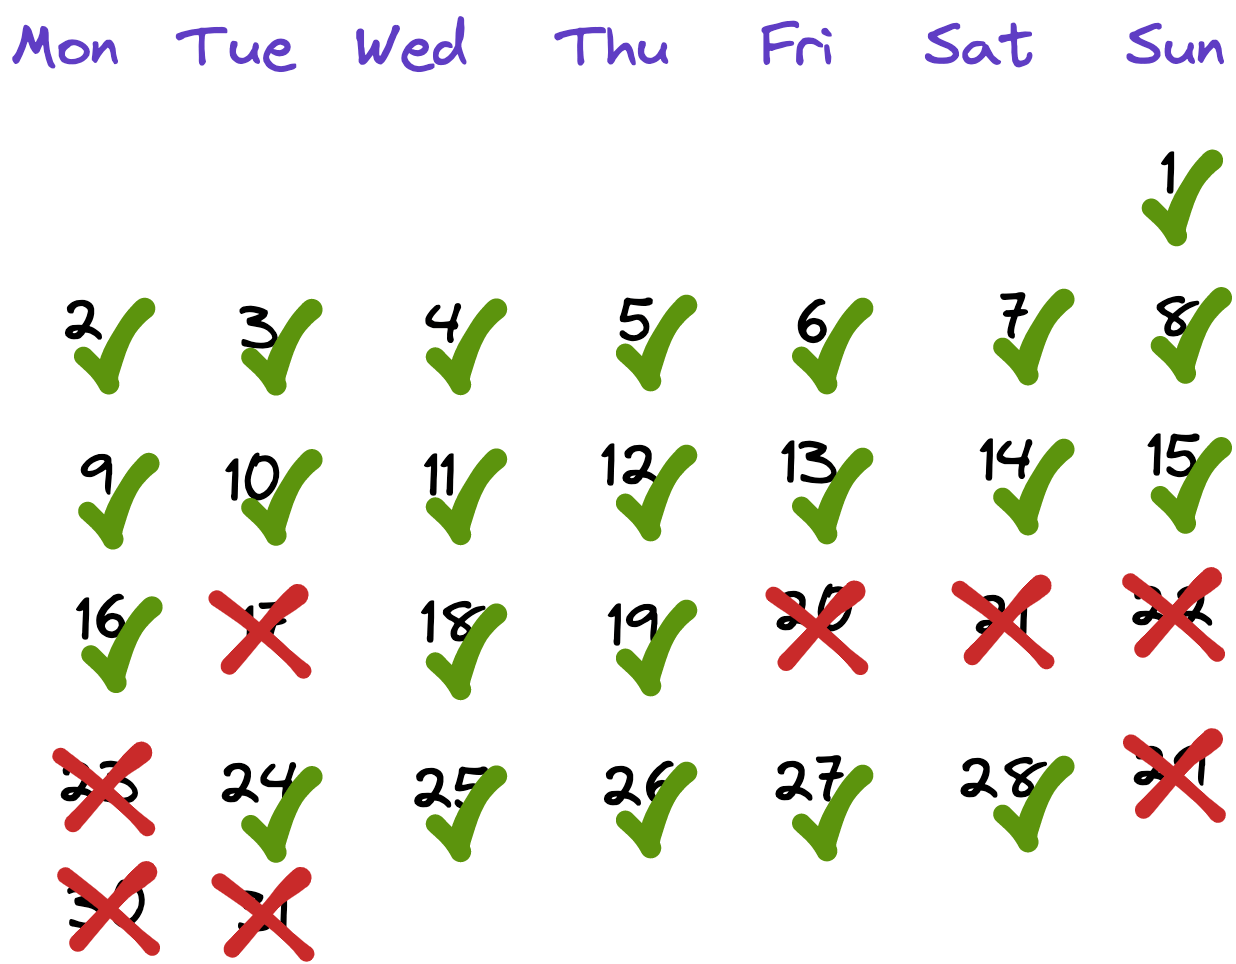 Challenge completion calendar